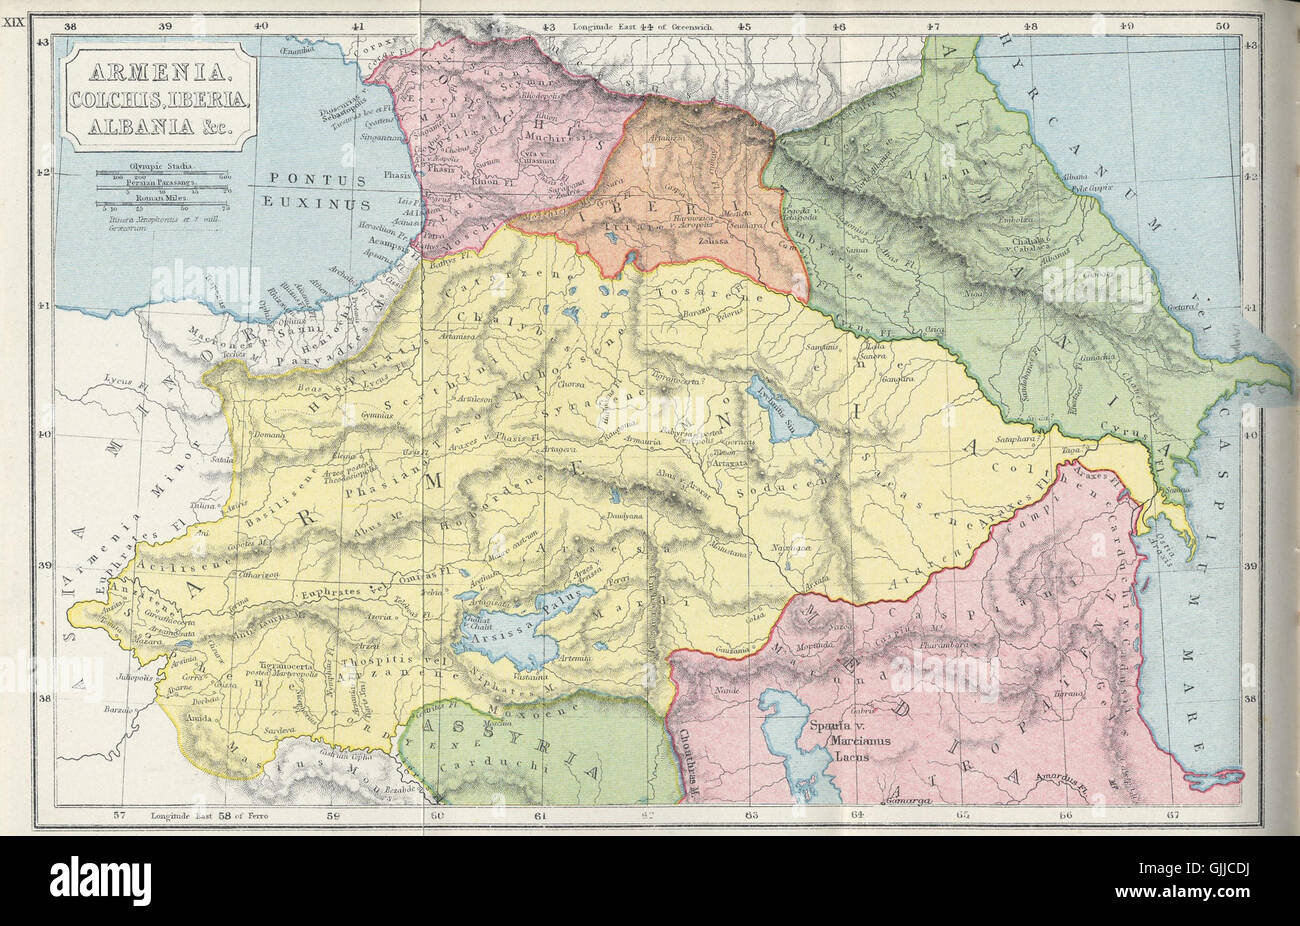 L'Arménie, de Colchide, Iberia, Albanie, etc. Banque D'Images